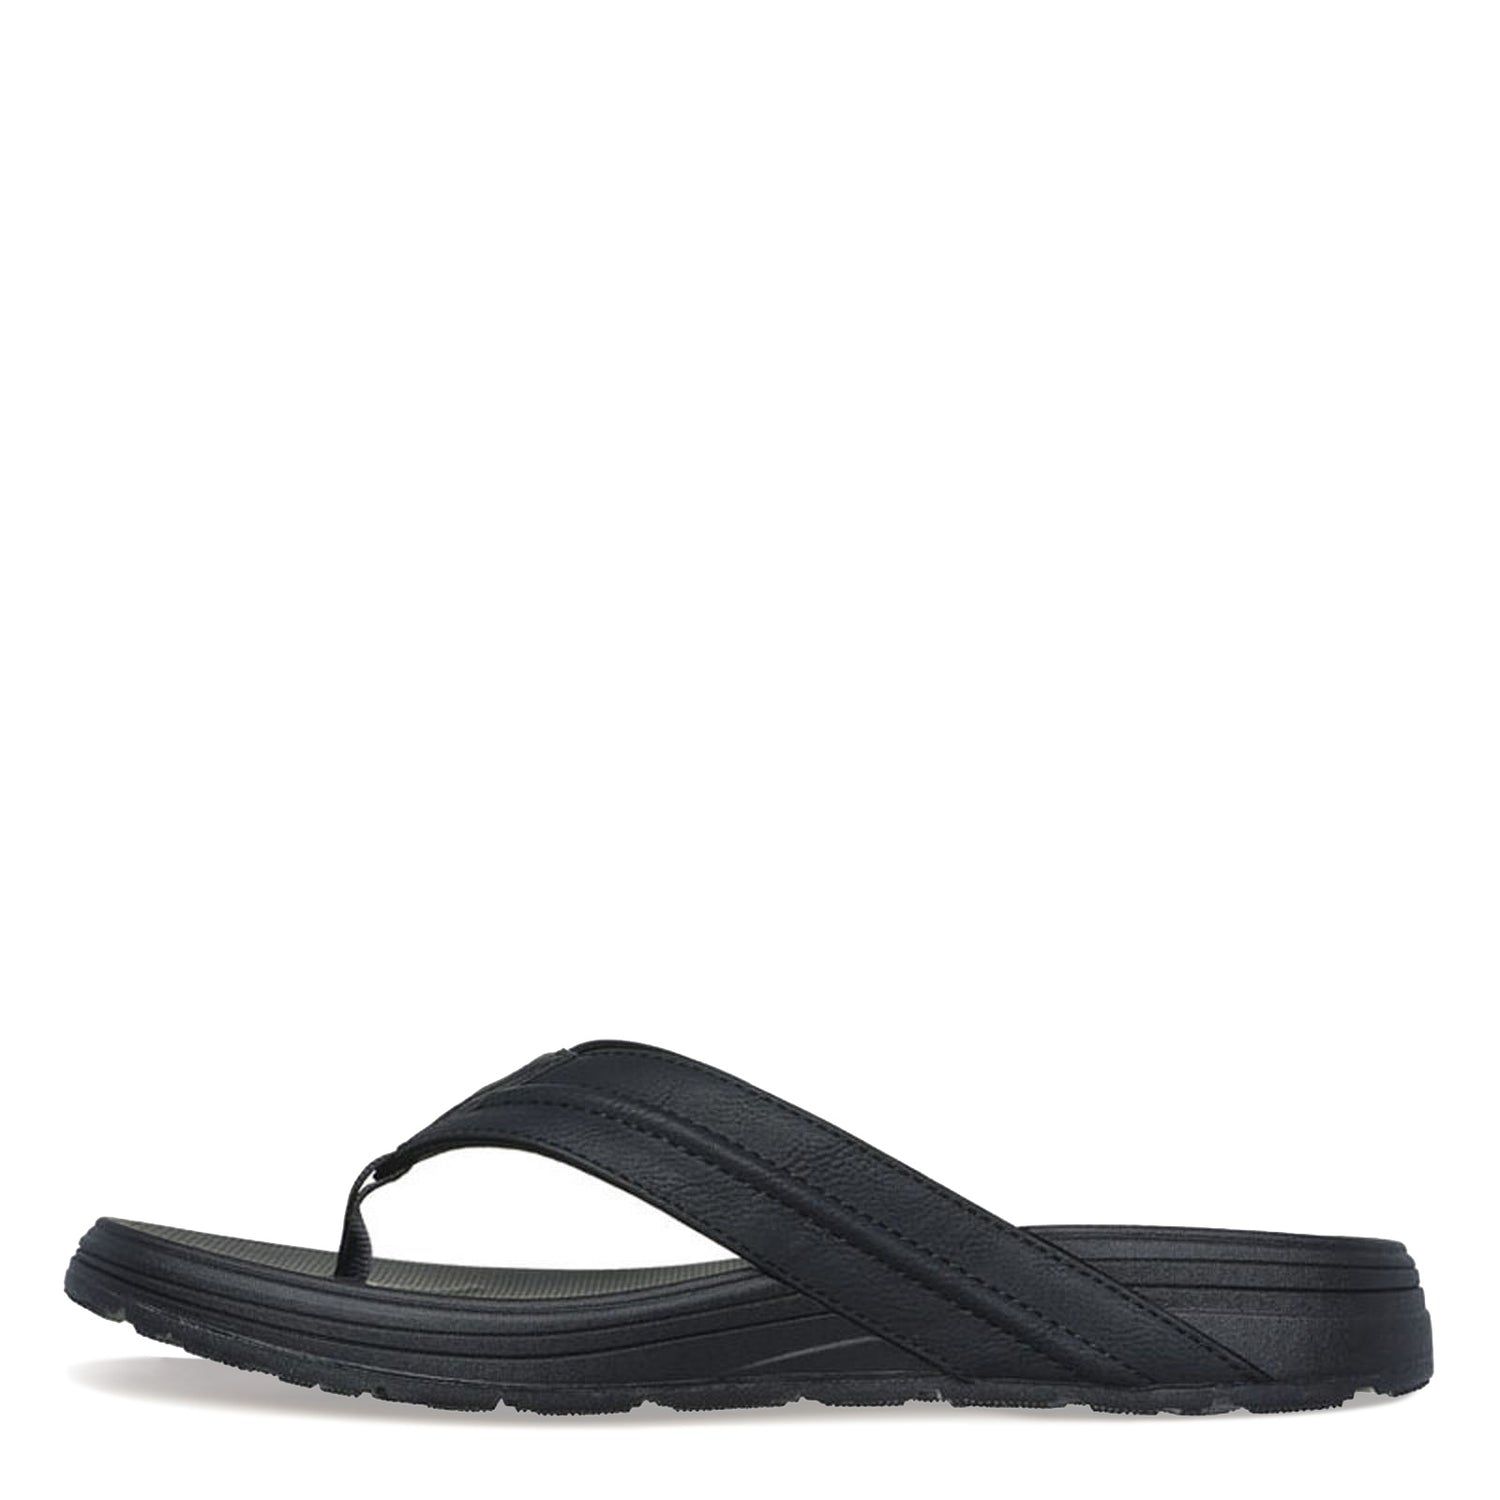 Peltz Shoes  Men's Skechers Relaxed Fit: Supreme - Bosnia Sandal Black 205111-BLK